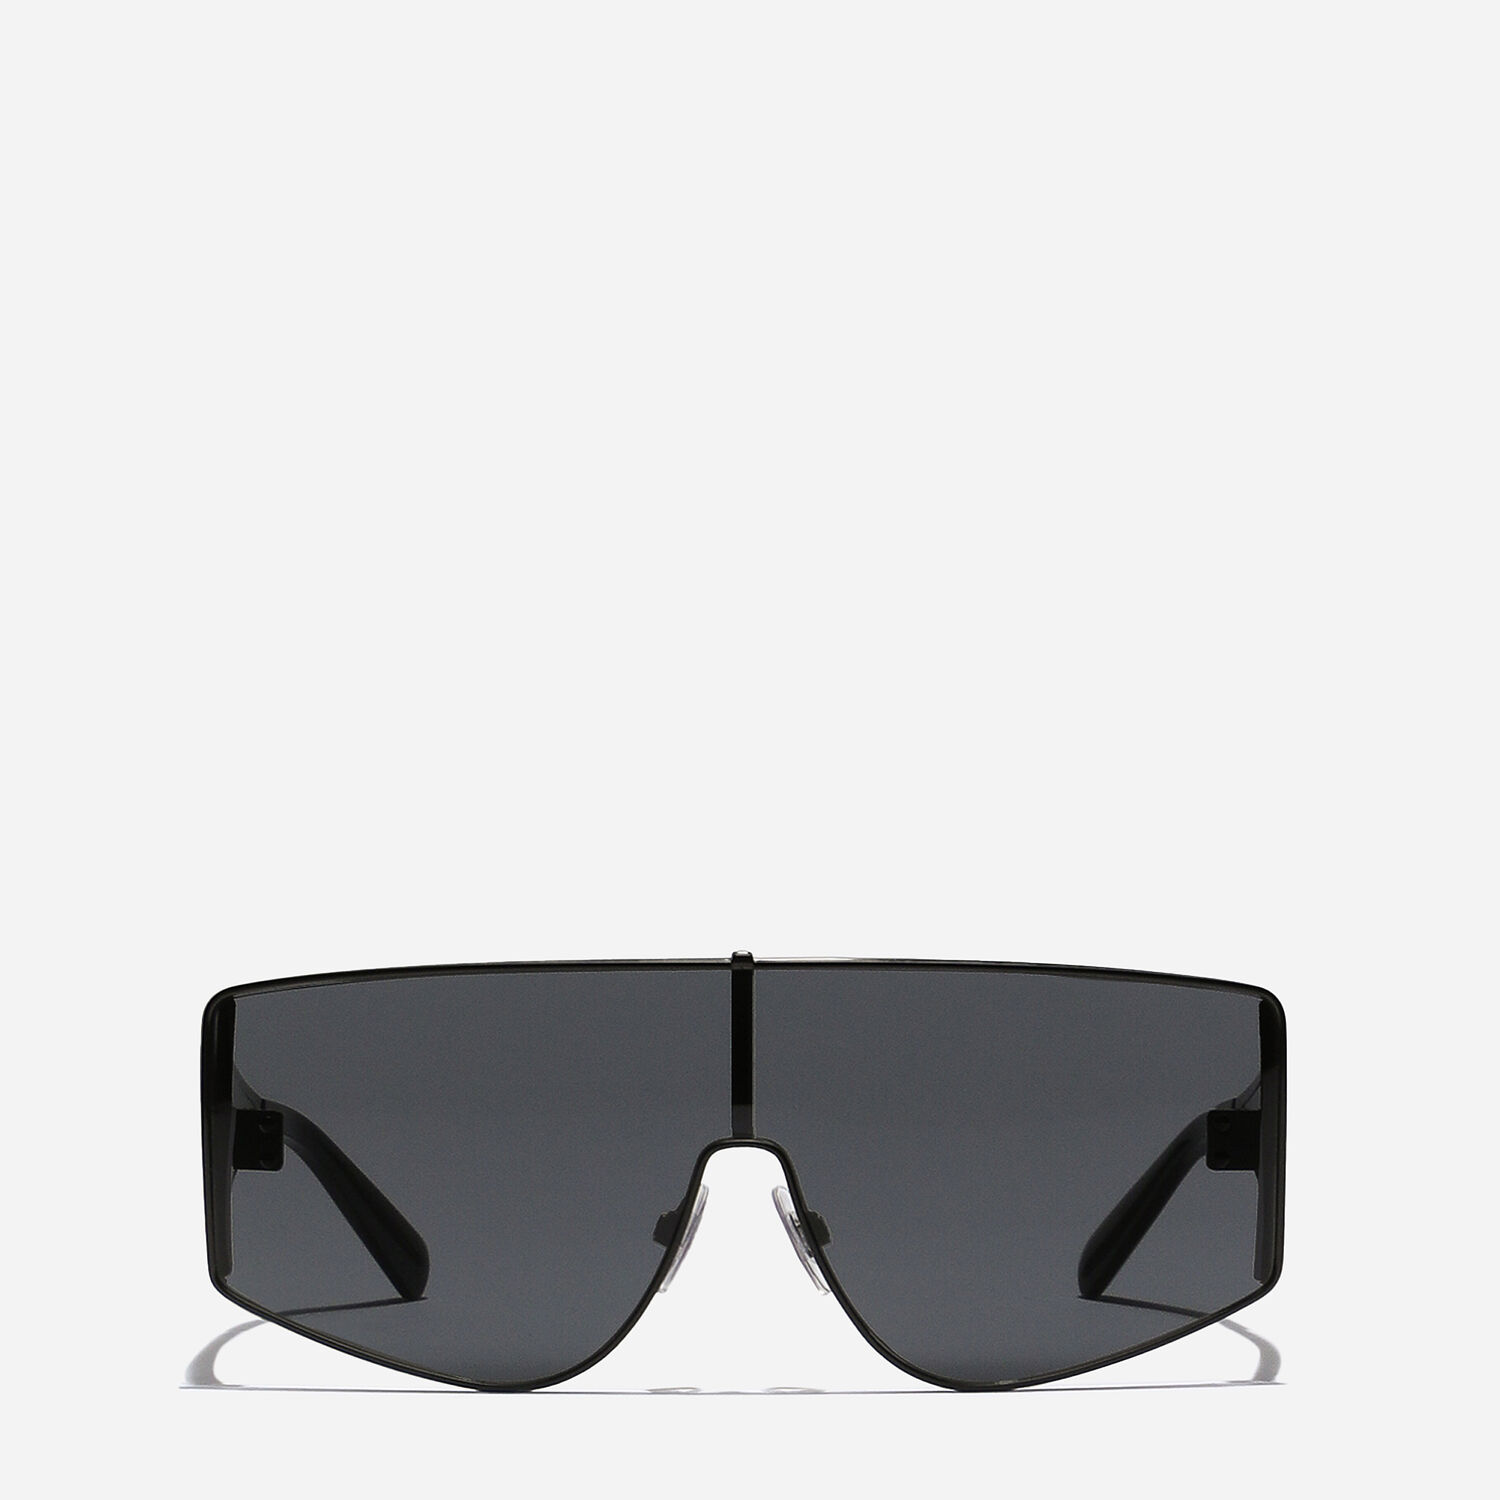 DG Sharped sunglasses in Black for